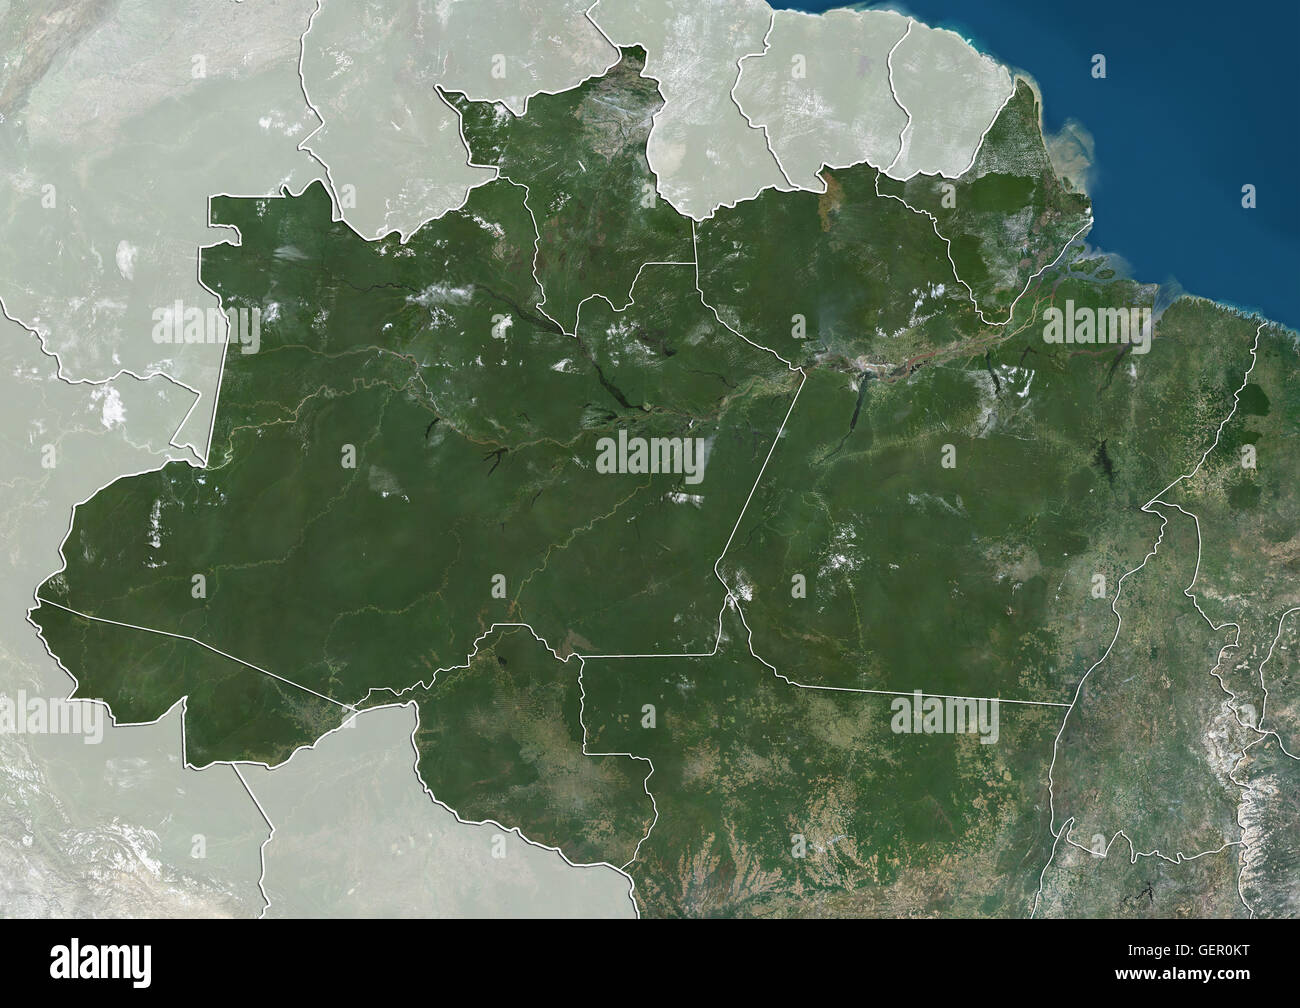 Satelliten-Ansicht der Norden Brasiliens (mit Verwaltungsgrenzen und Maske). Es besteht aus den Bundesstaaten Acre, Amapa, Amazonas, Para, Rondonia, Roraima und Tocantins. Dieses Bild wurde aus Daten von Landsat-Satelliten erworben erstellt. Stockfoto